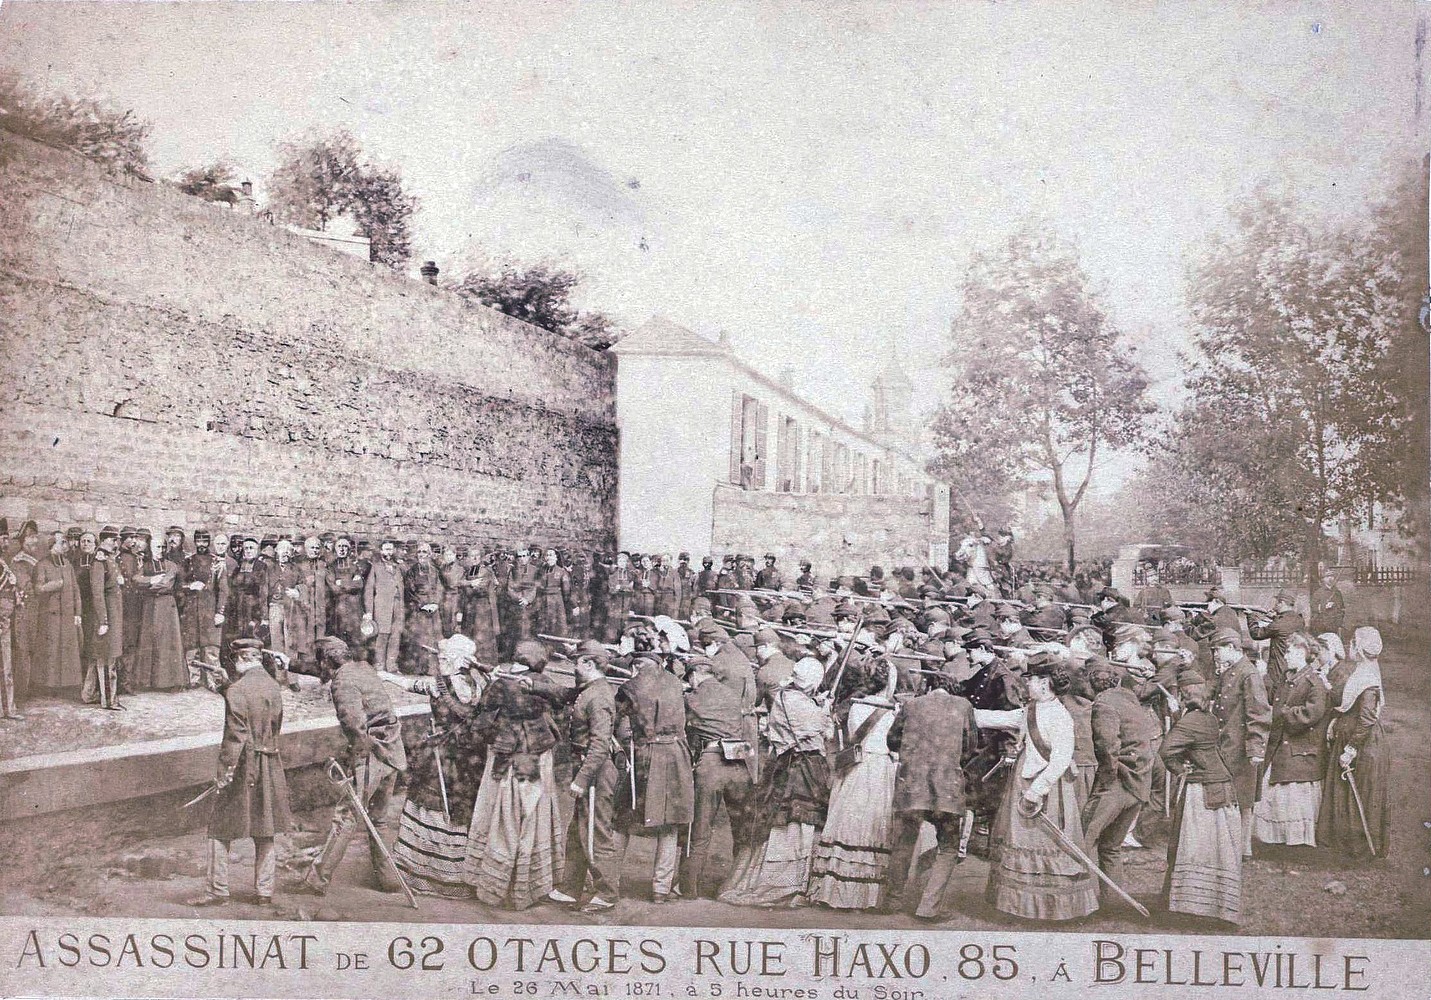 Assassinat de 62 otages rue Haxo 85 à Belleville. Le 26 mai 1871 à 5 heures du Soir - Photomontage réalisé par Eugène Appert et issu de la série des Crimes de la Commune. (Wikimédia)